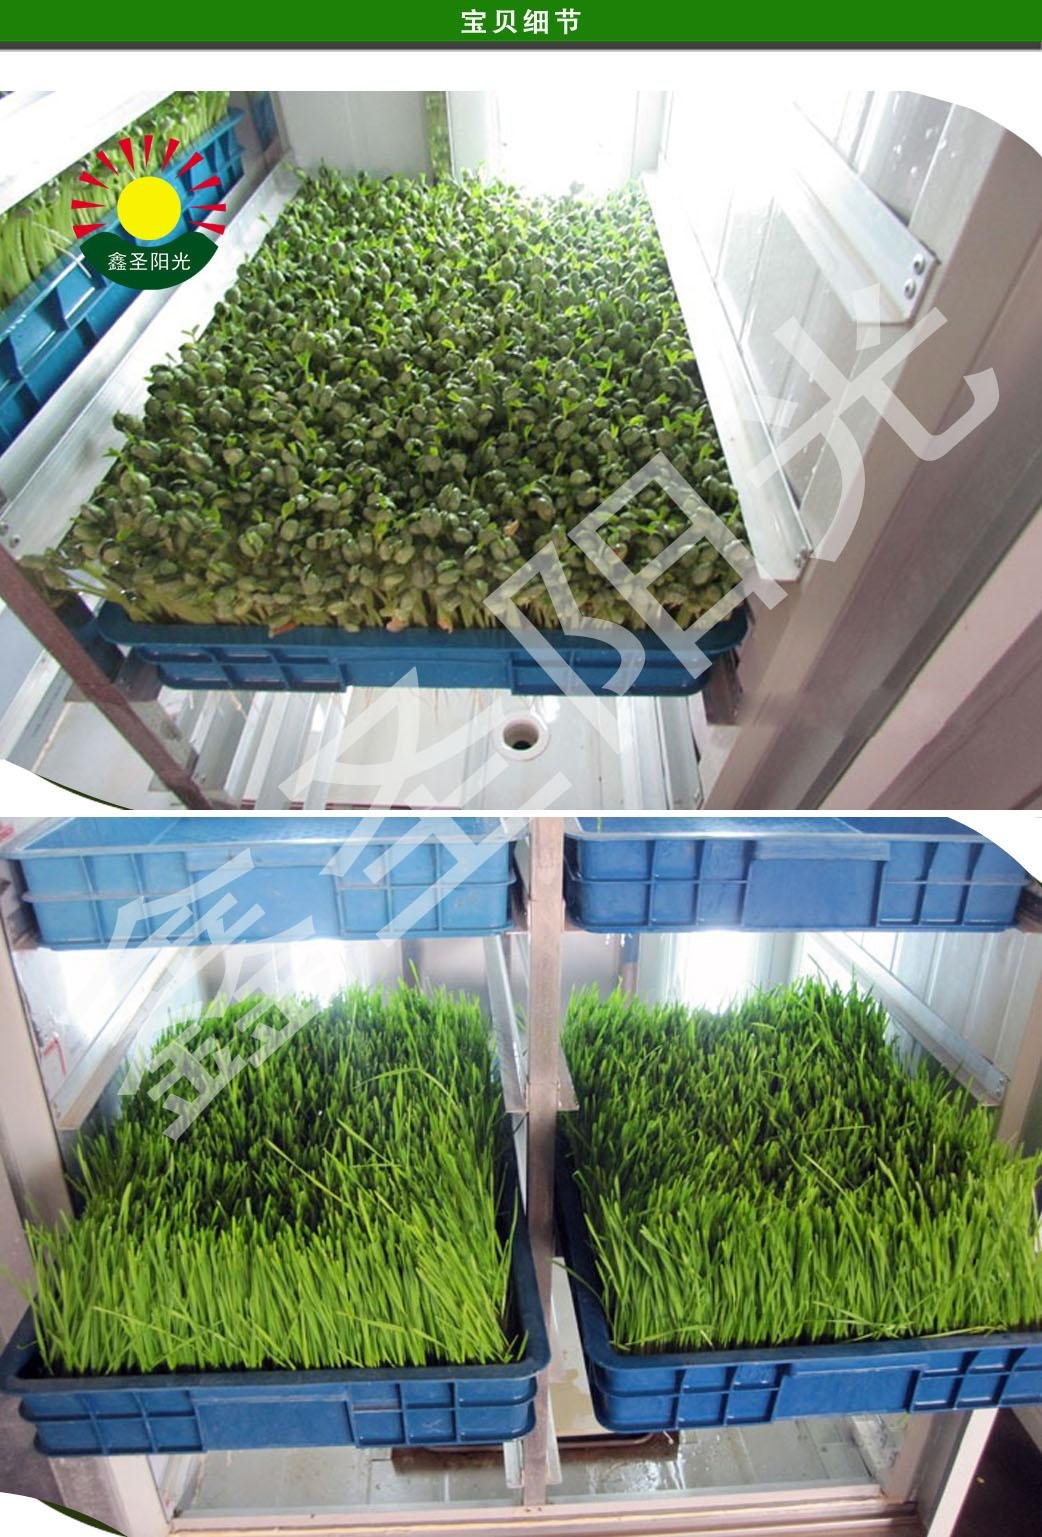 大型全自动豆芽转绿机大容量芽苗菜机器催芽机高产量芽苗菜机特价 4